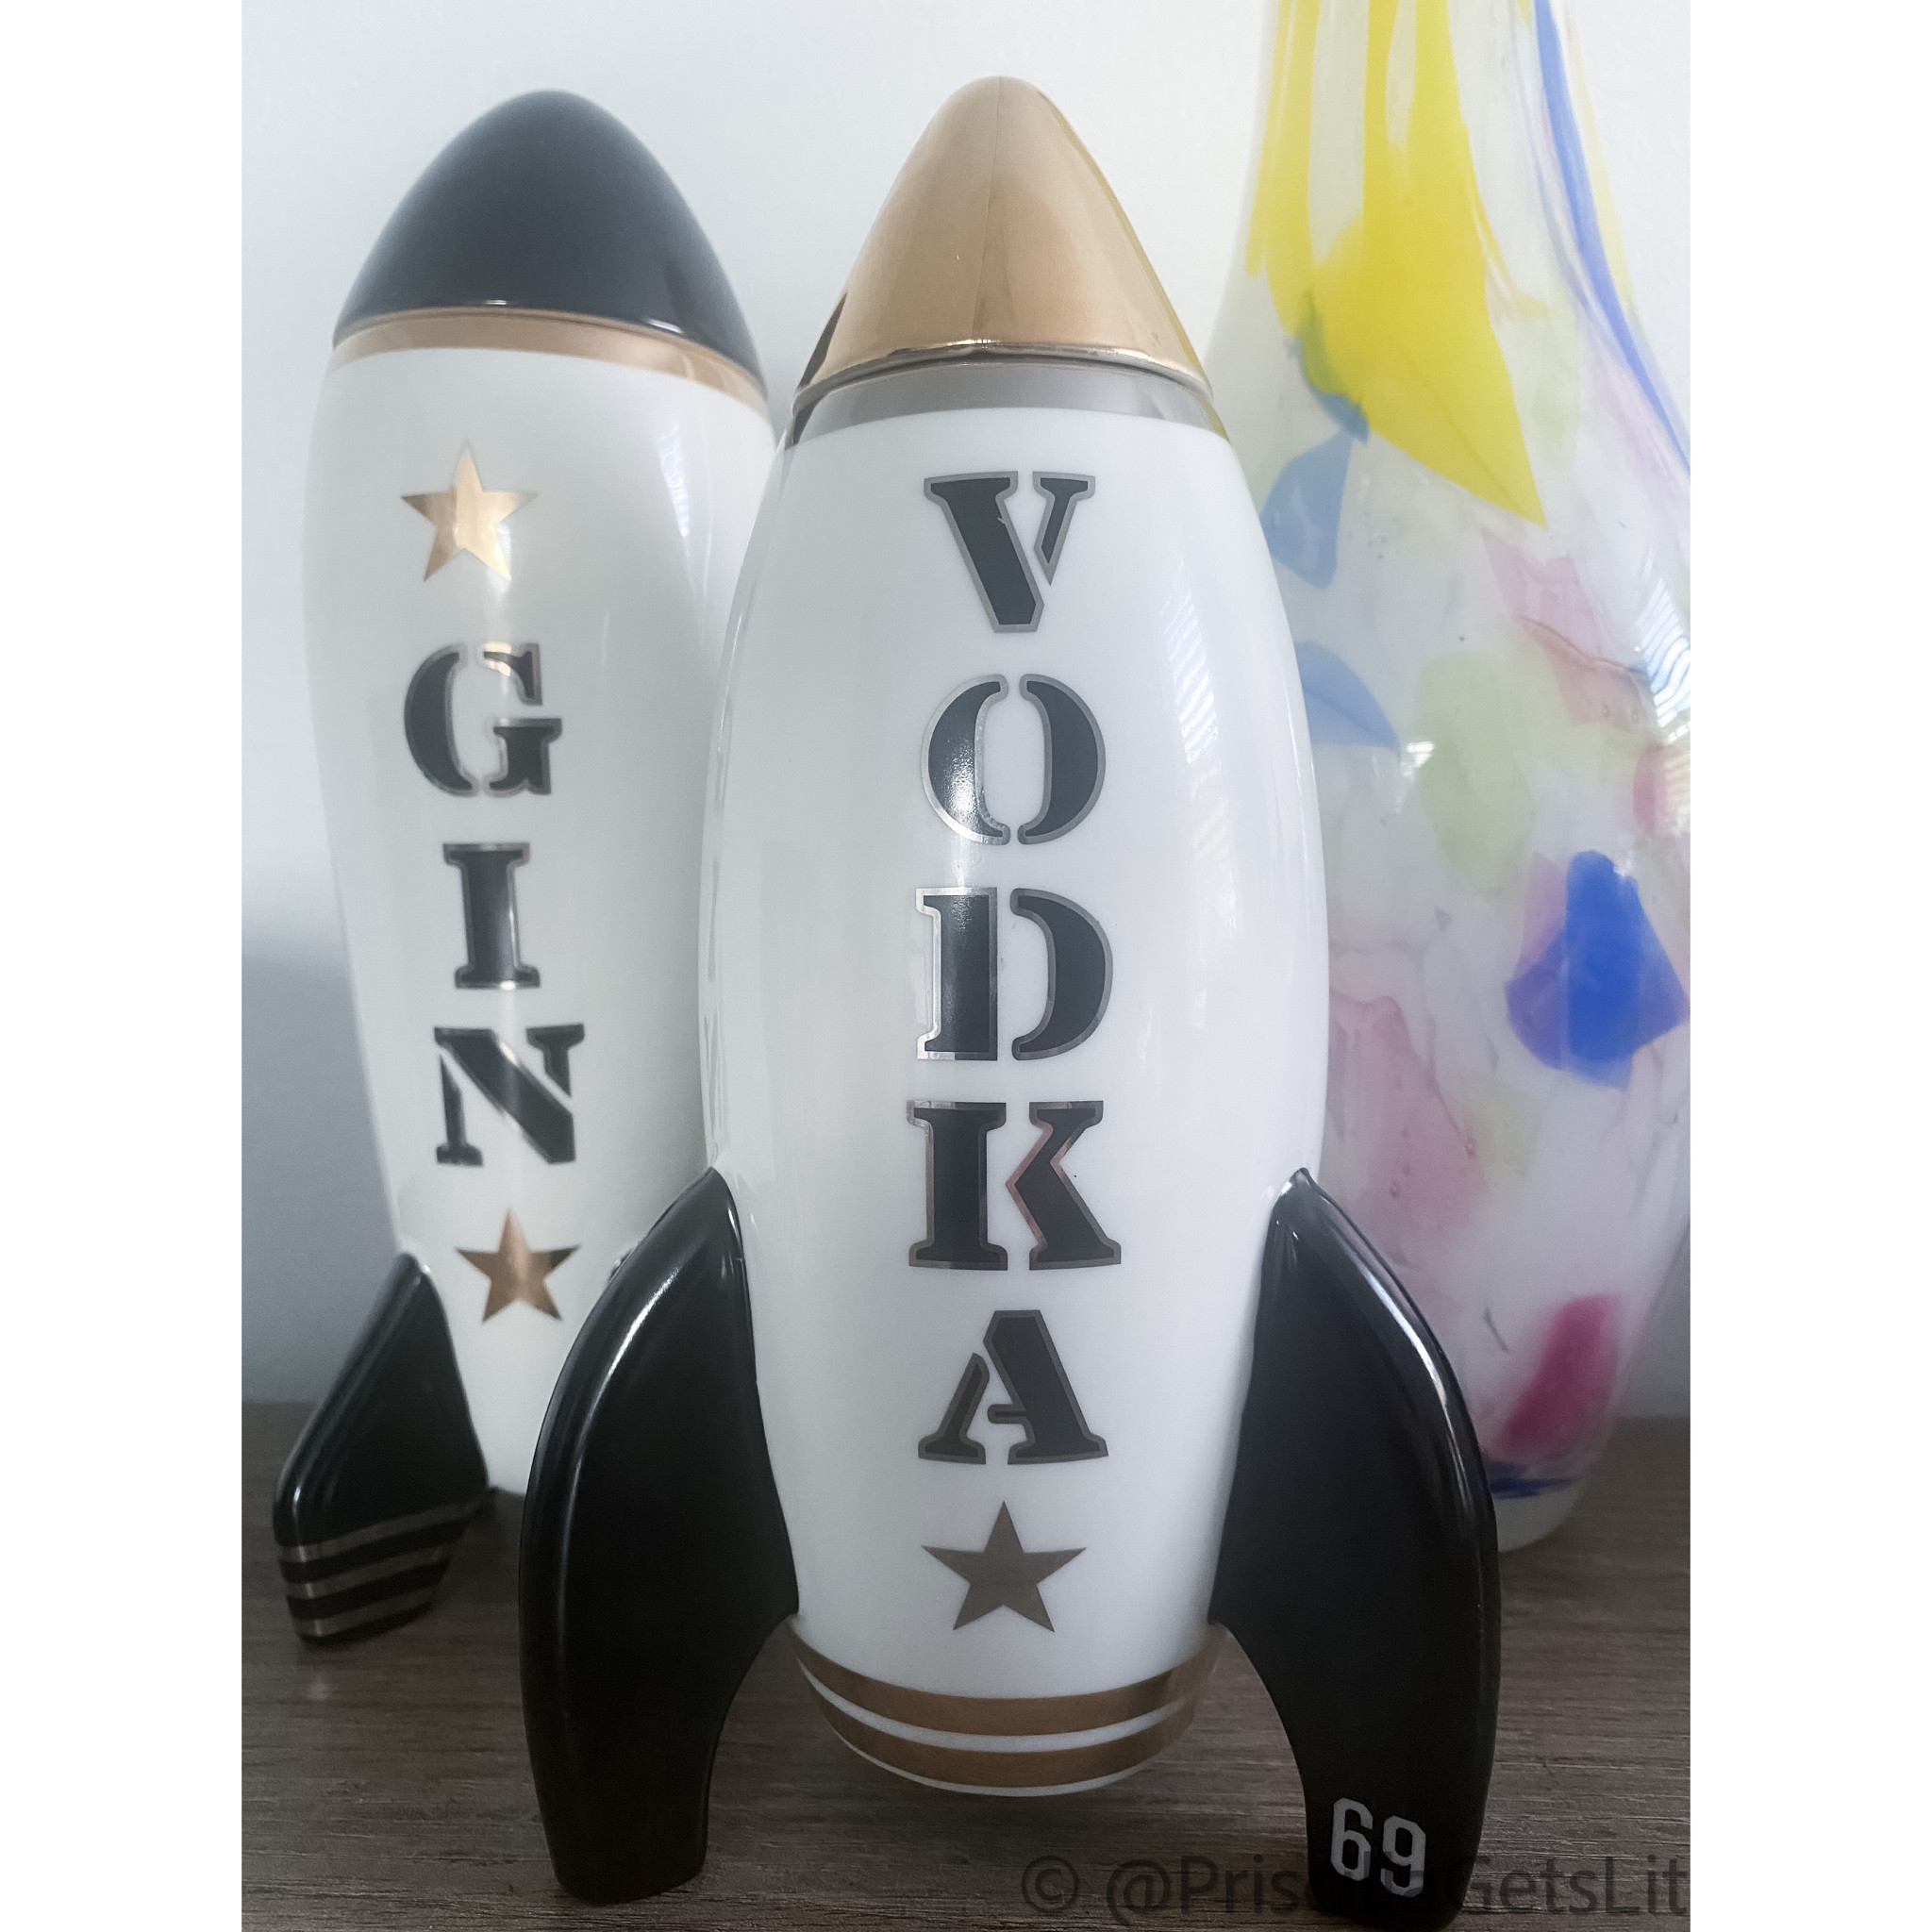 Rocket Vodka Decanter curated on LTK